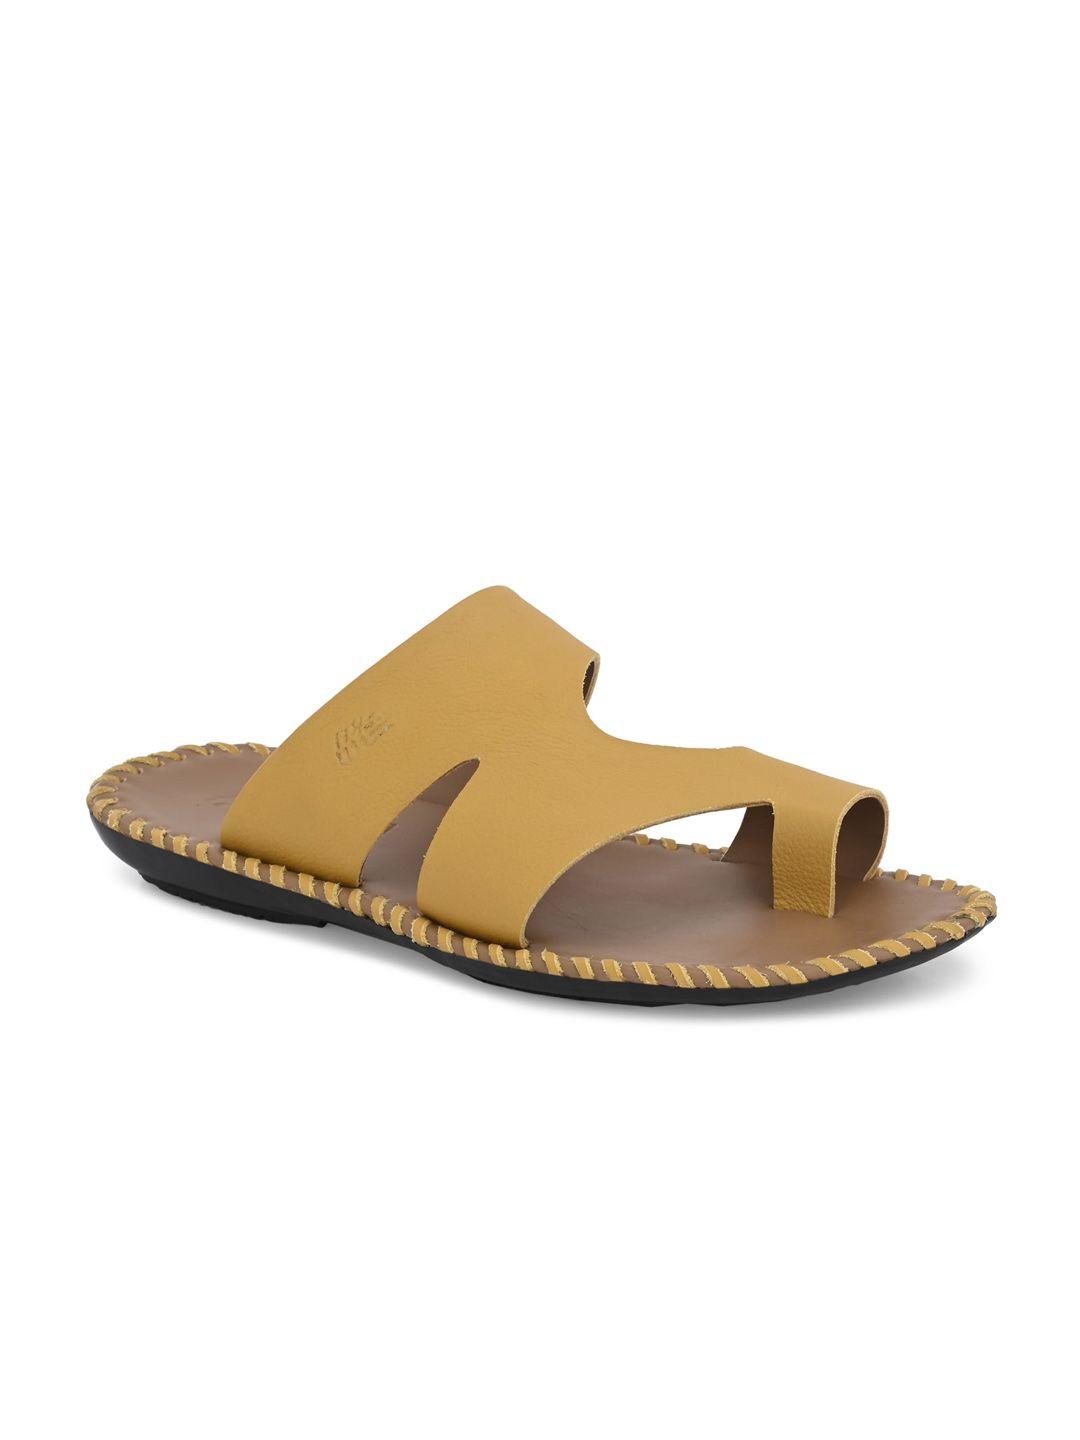 hitz men leather comfort sandals